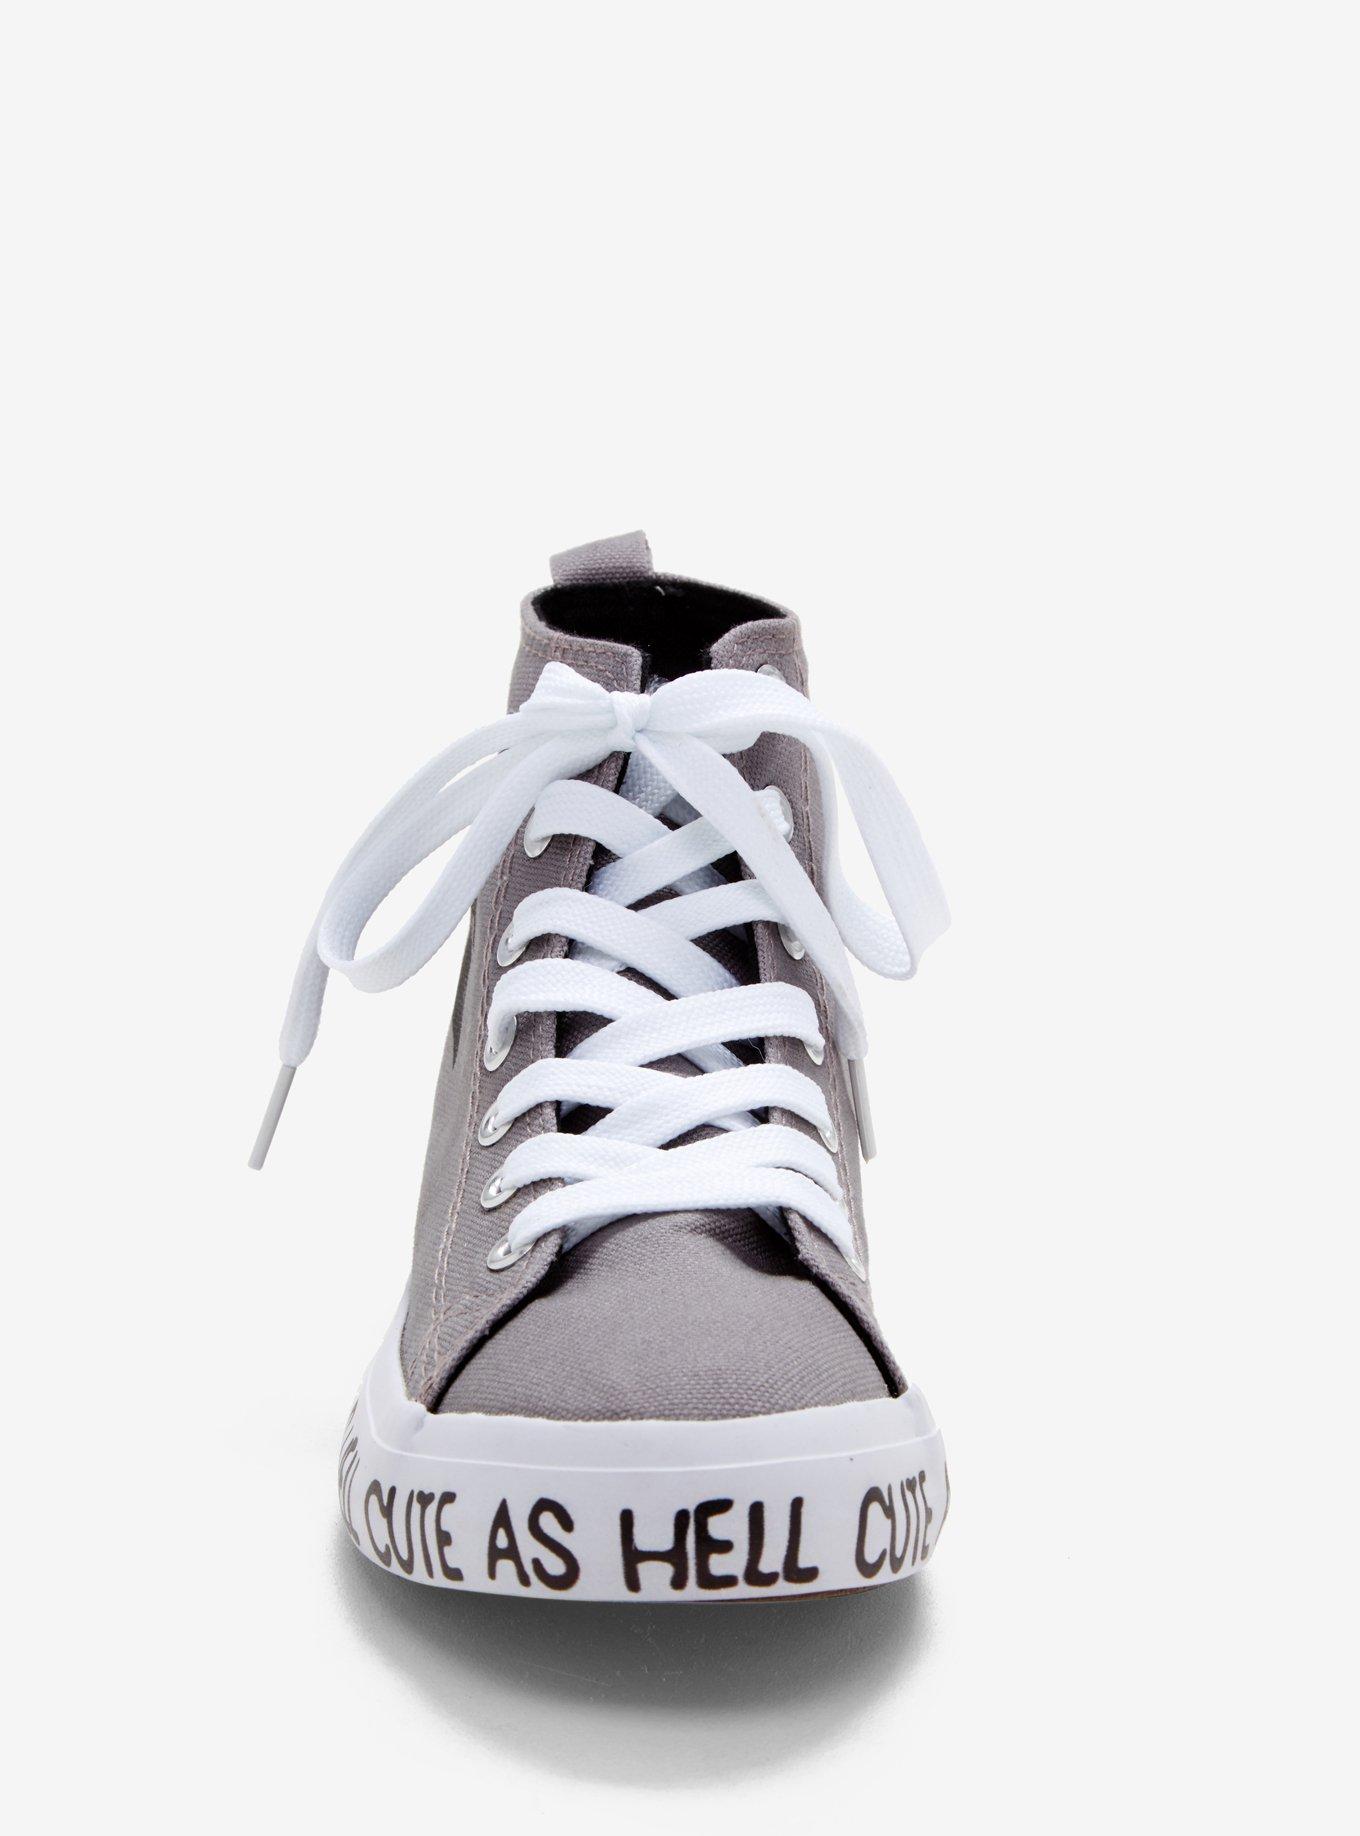 Grey & White Grim Reaper Cute As Hell Hi-Top Sneakers, , alternate